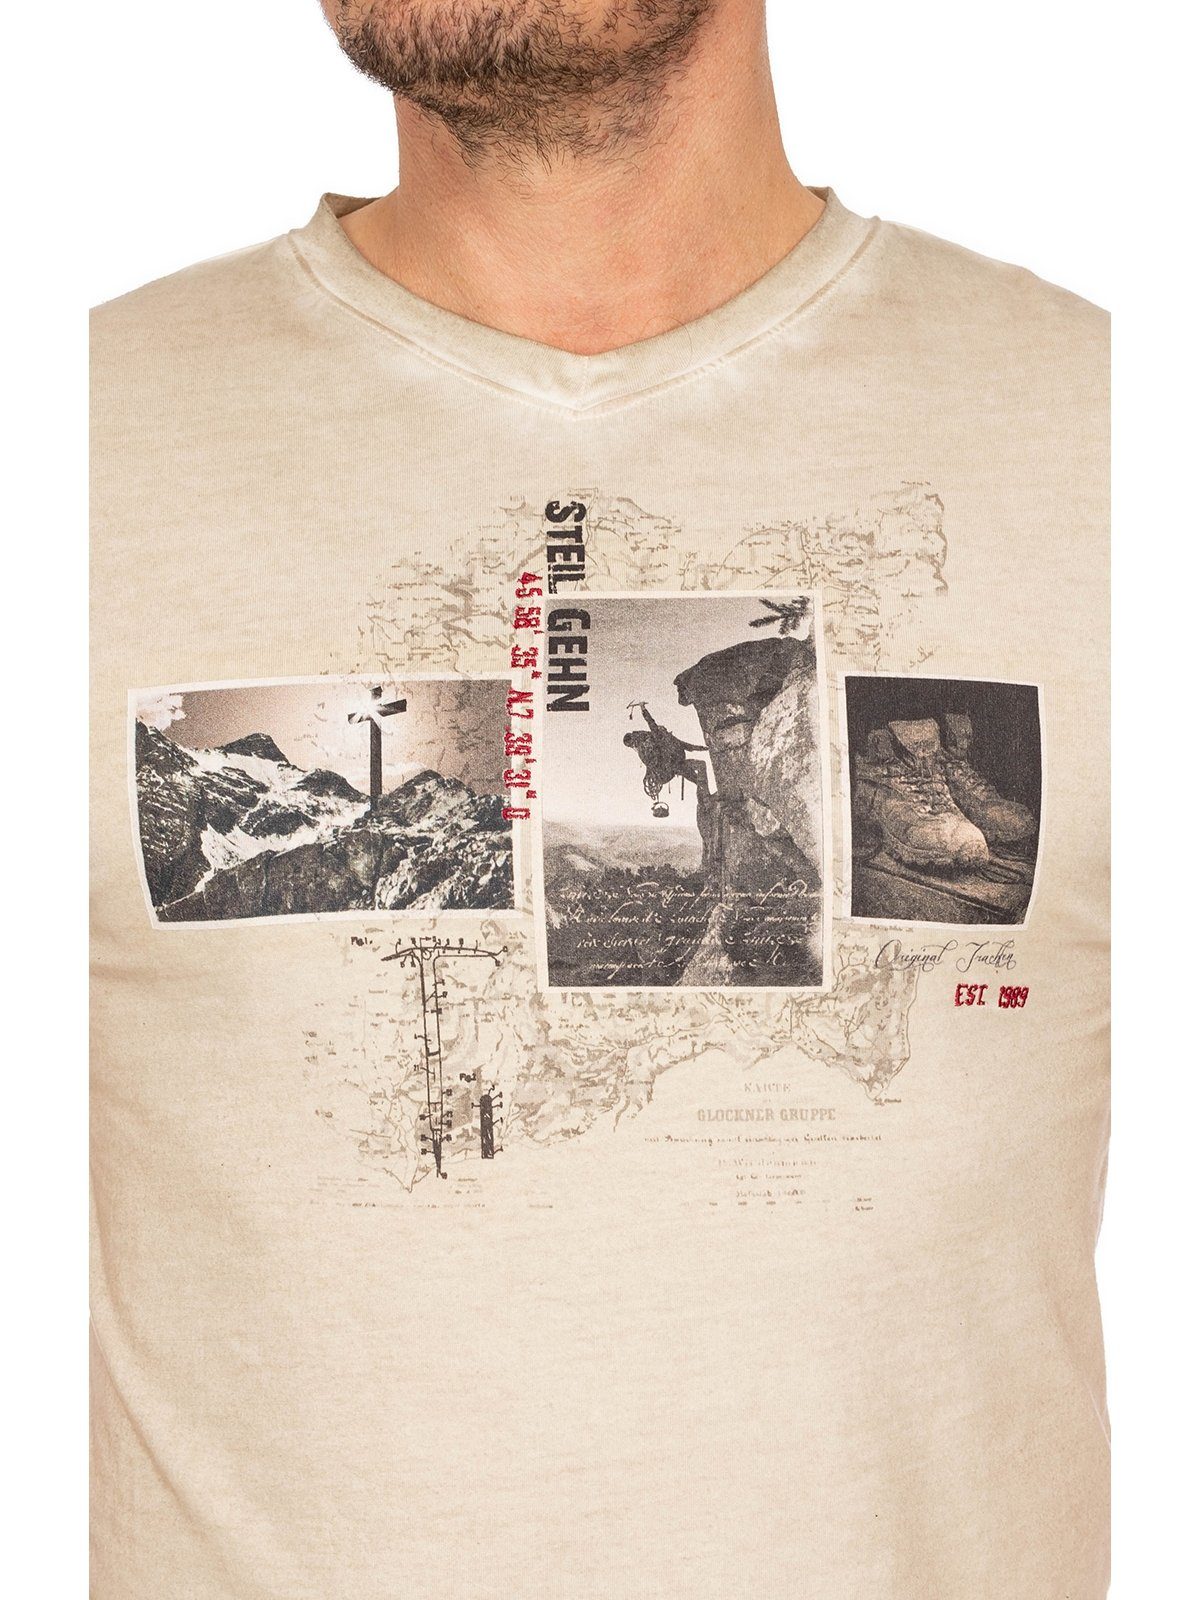 MarJo Trachtenshirt T-Shirt THEODOR sandstein